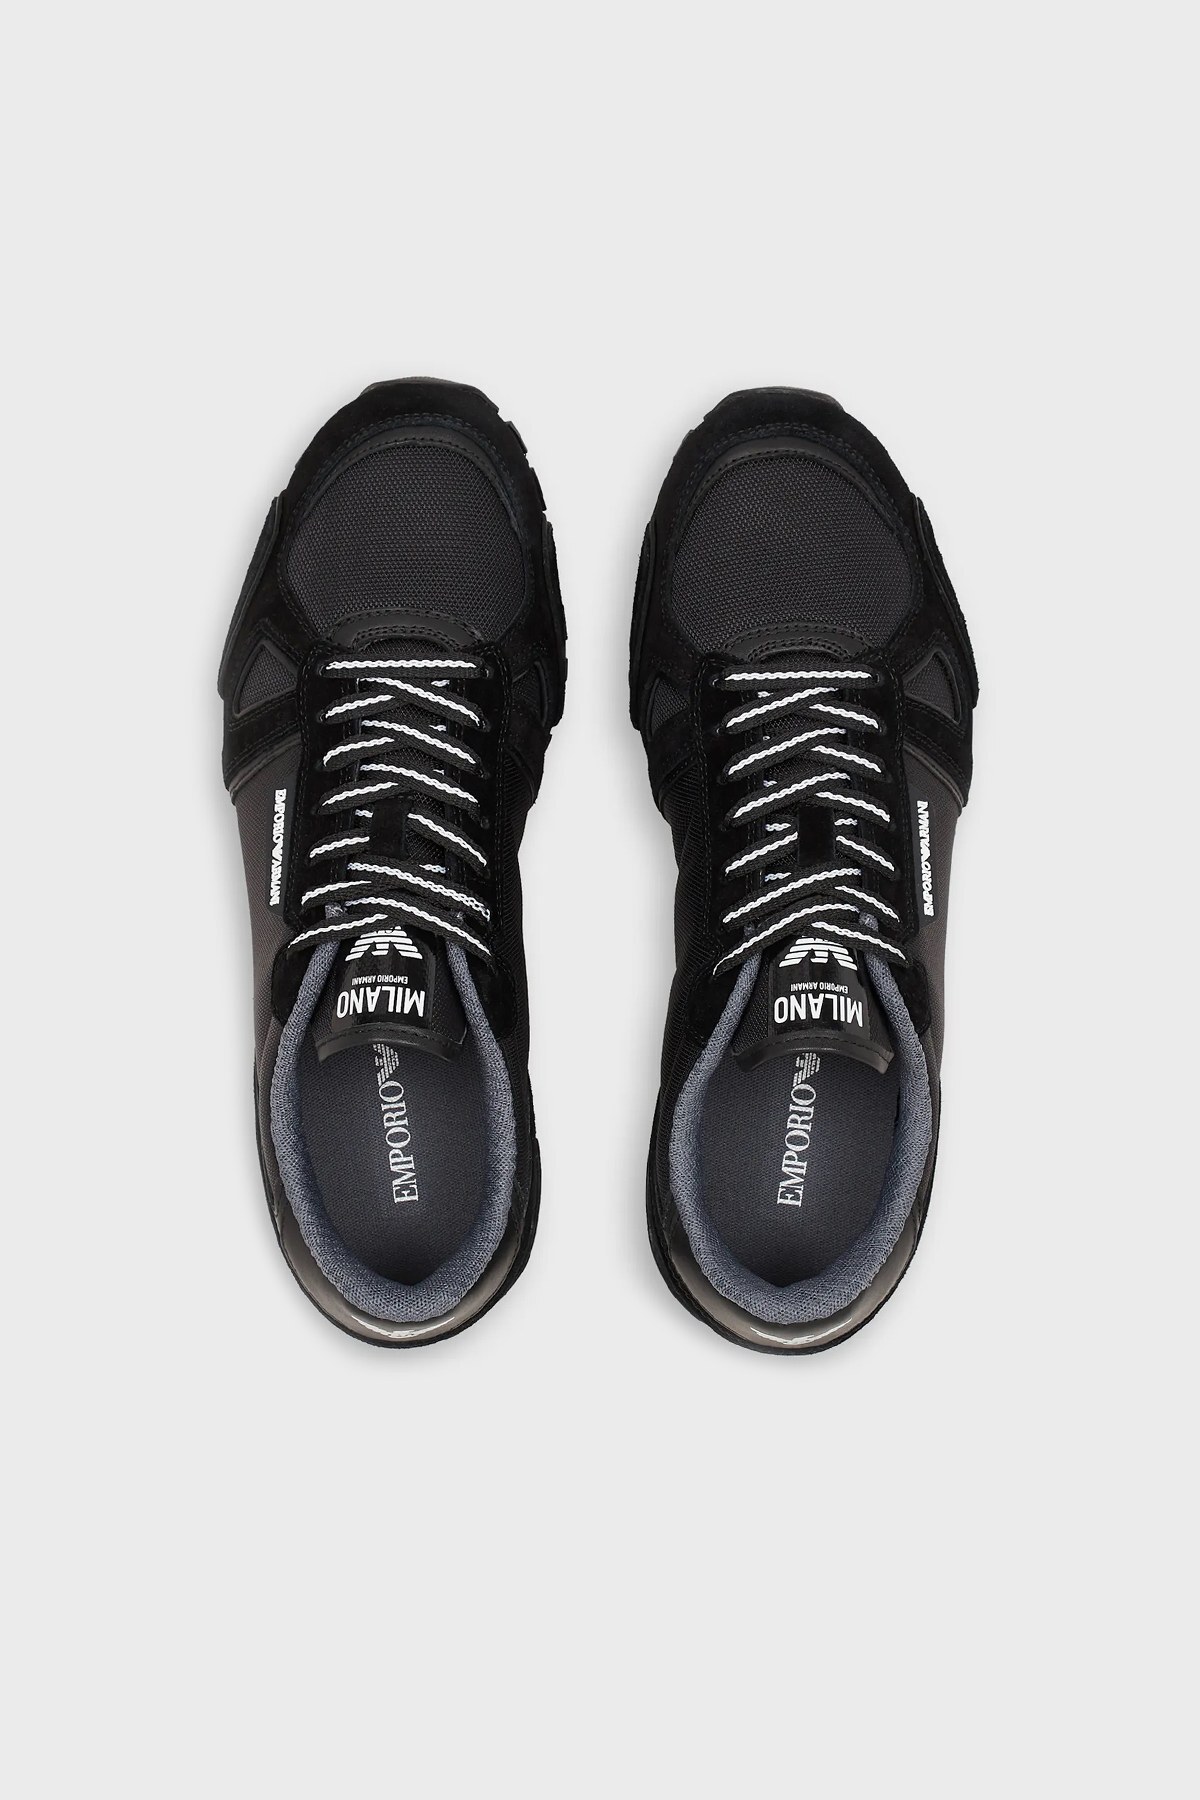 Emporio Armani Logolu Bağcıklı Sneaker Erkek Ayakkabı X4X289 XM498 N016 SİYAH